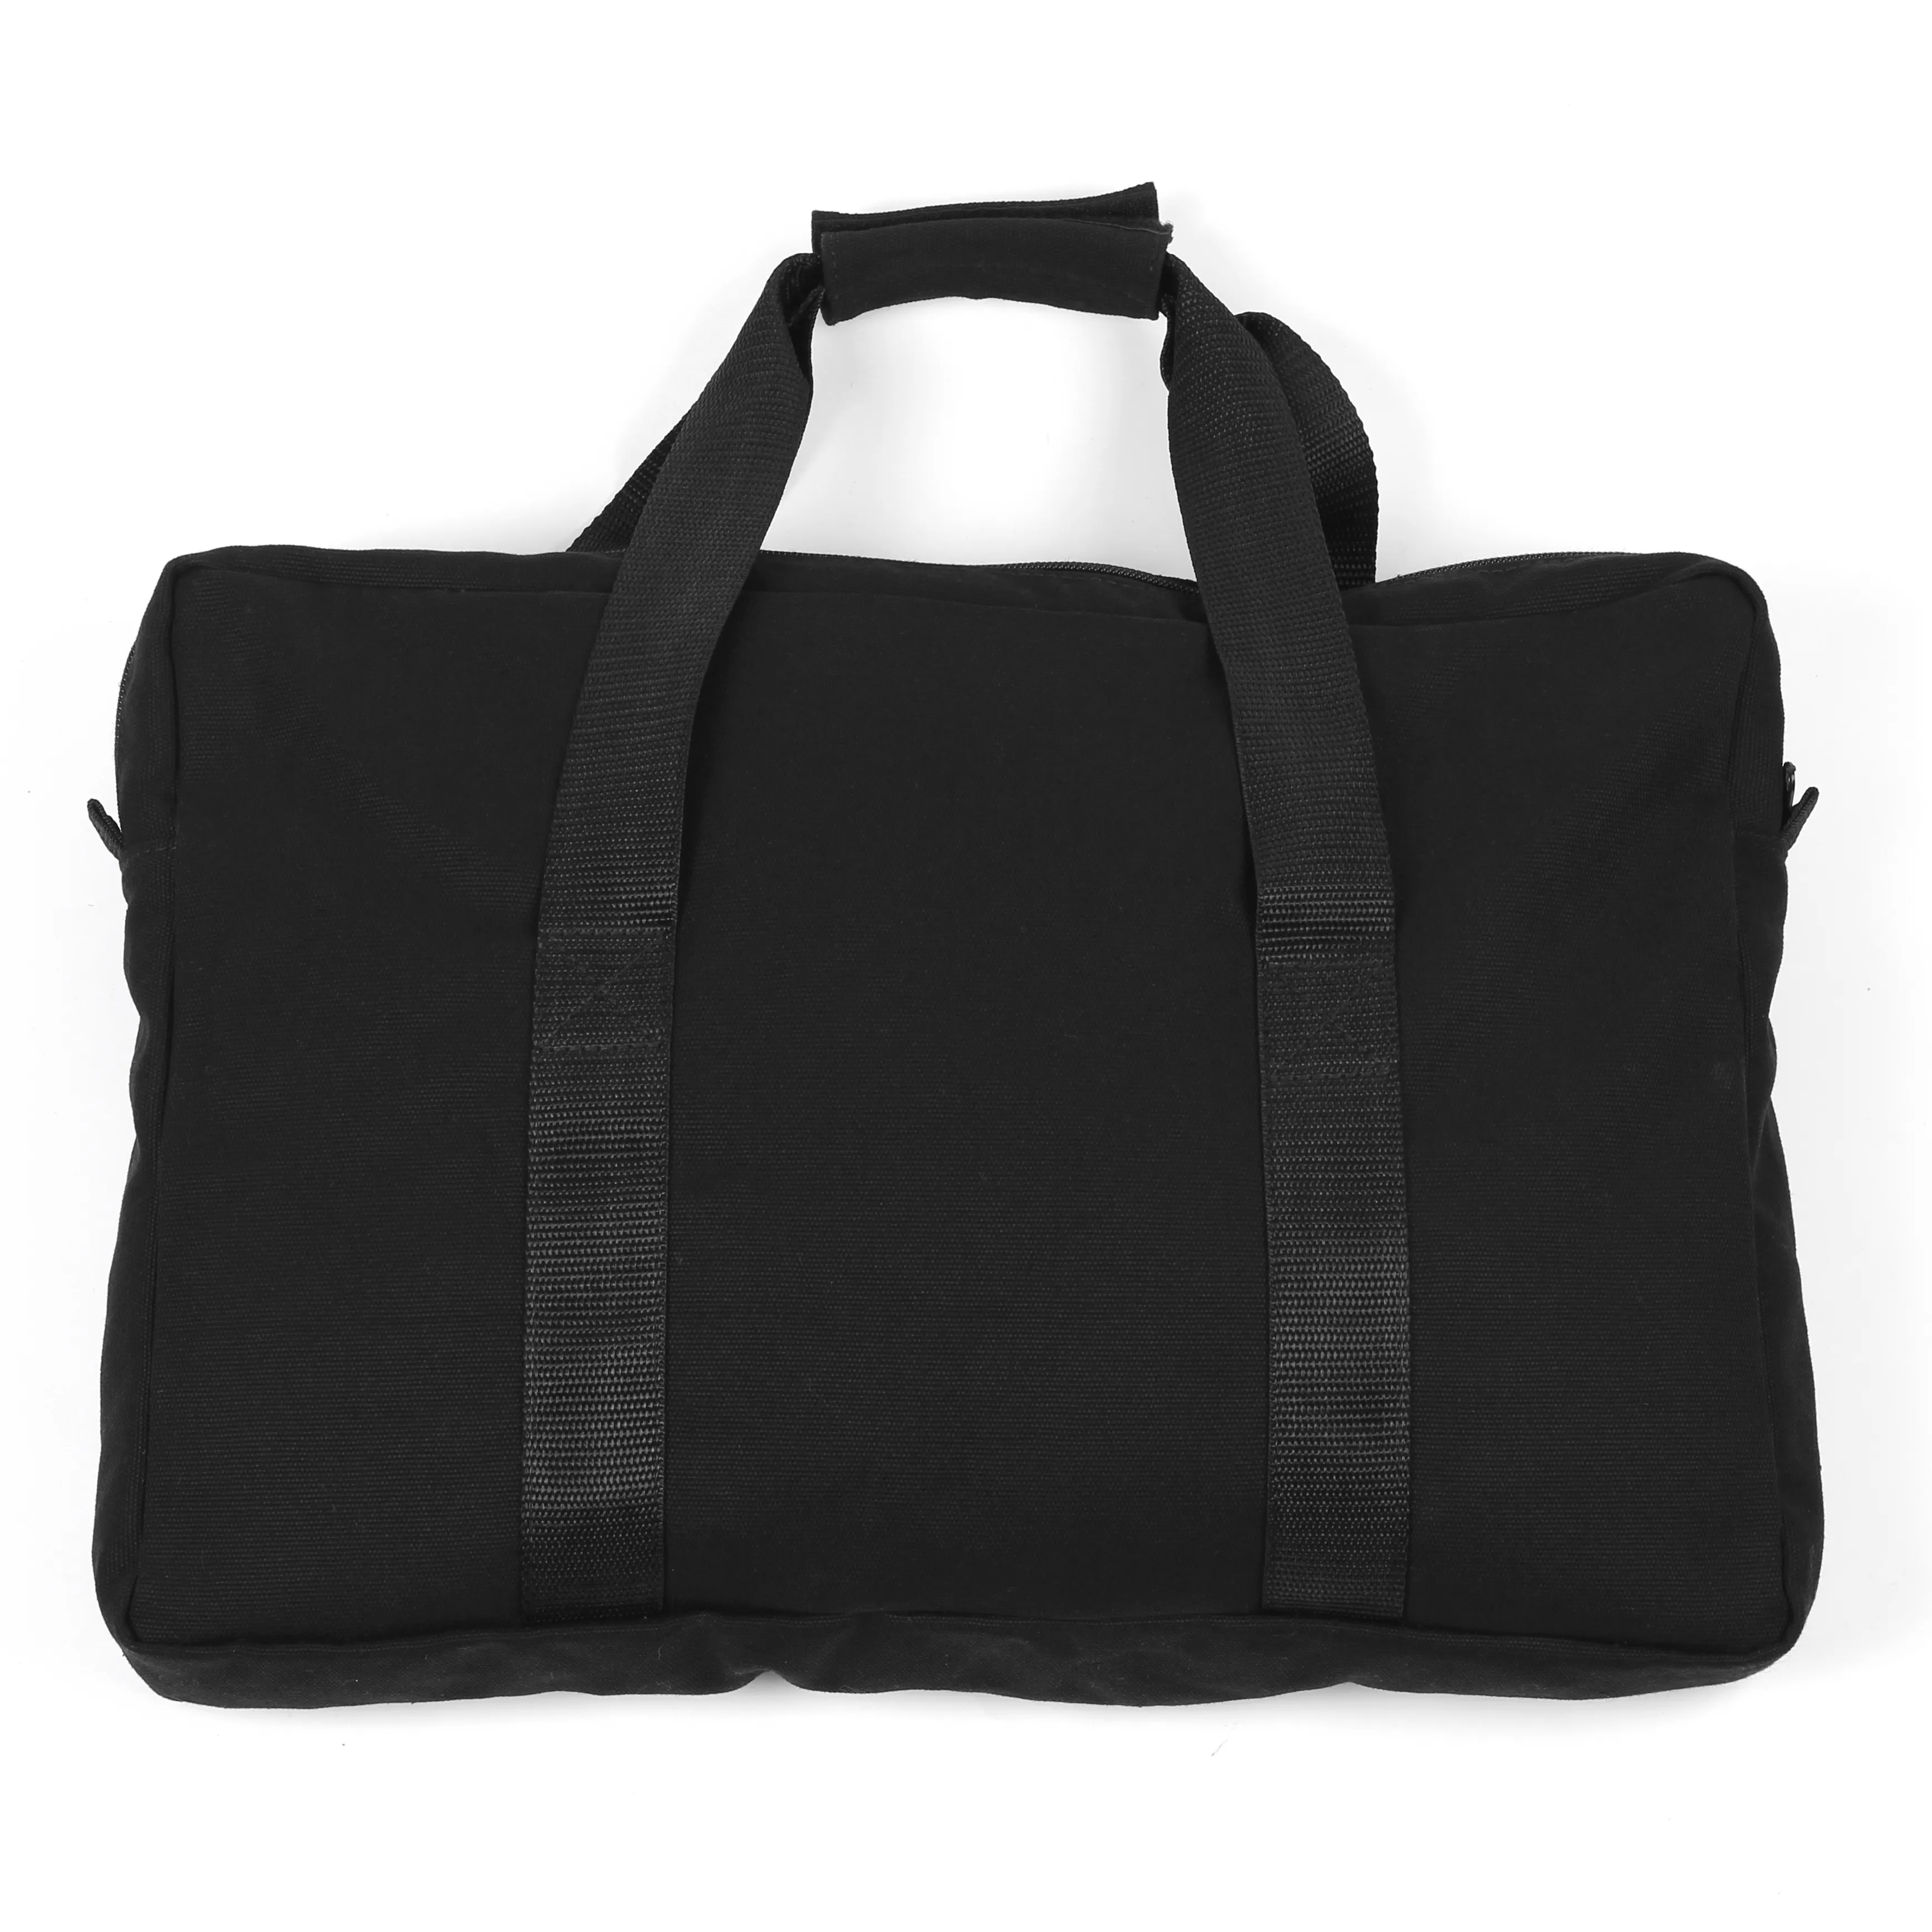 Siyah toptan özel ince çanta organizatör İşlevli açık omuz Messenger Laptop için yönetici seyahat çantası